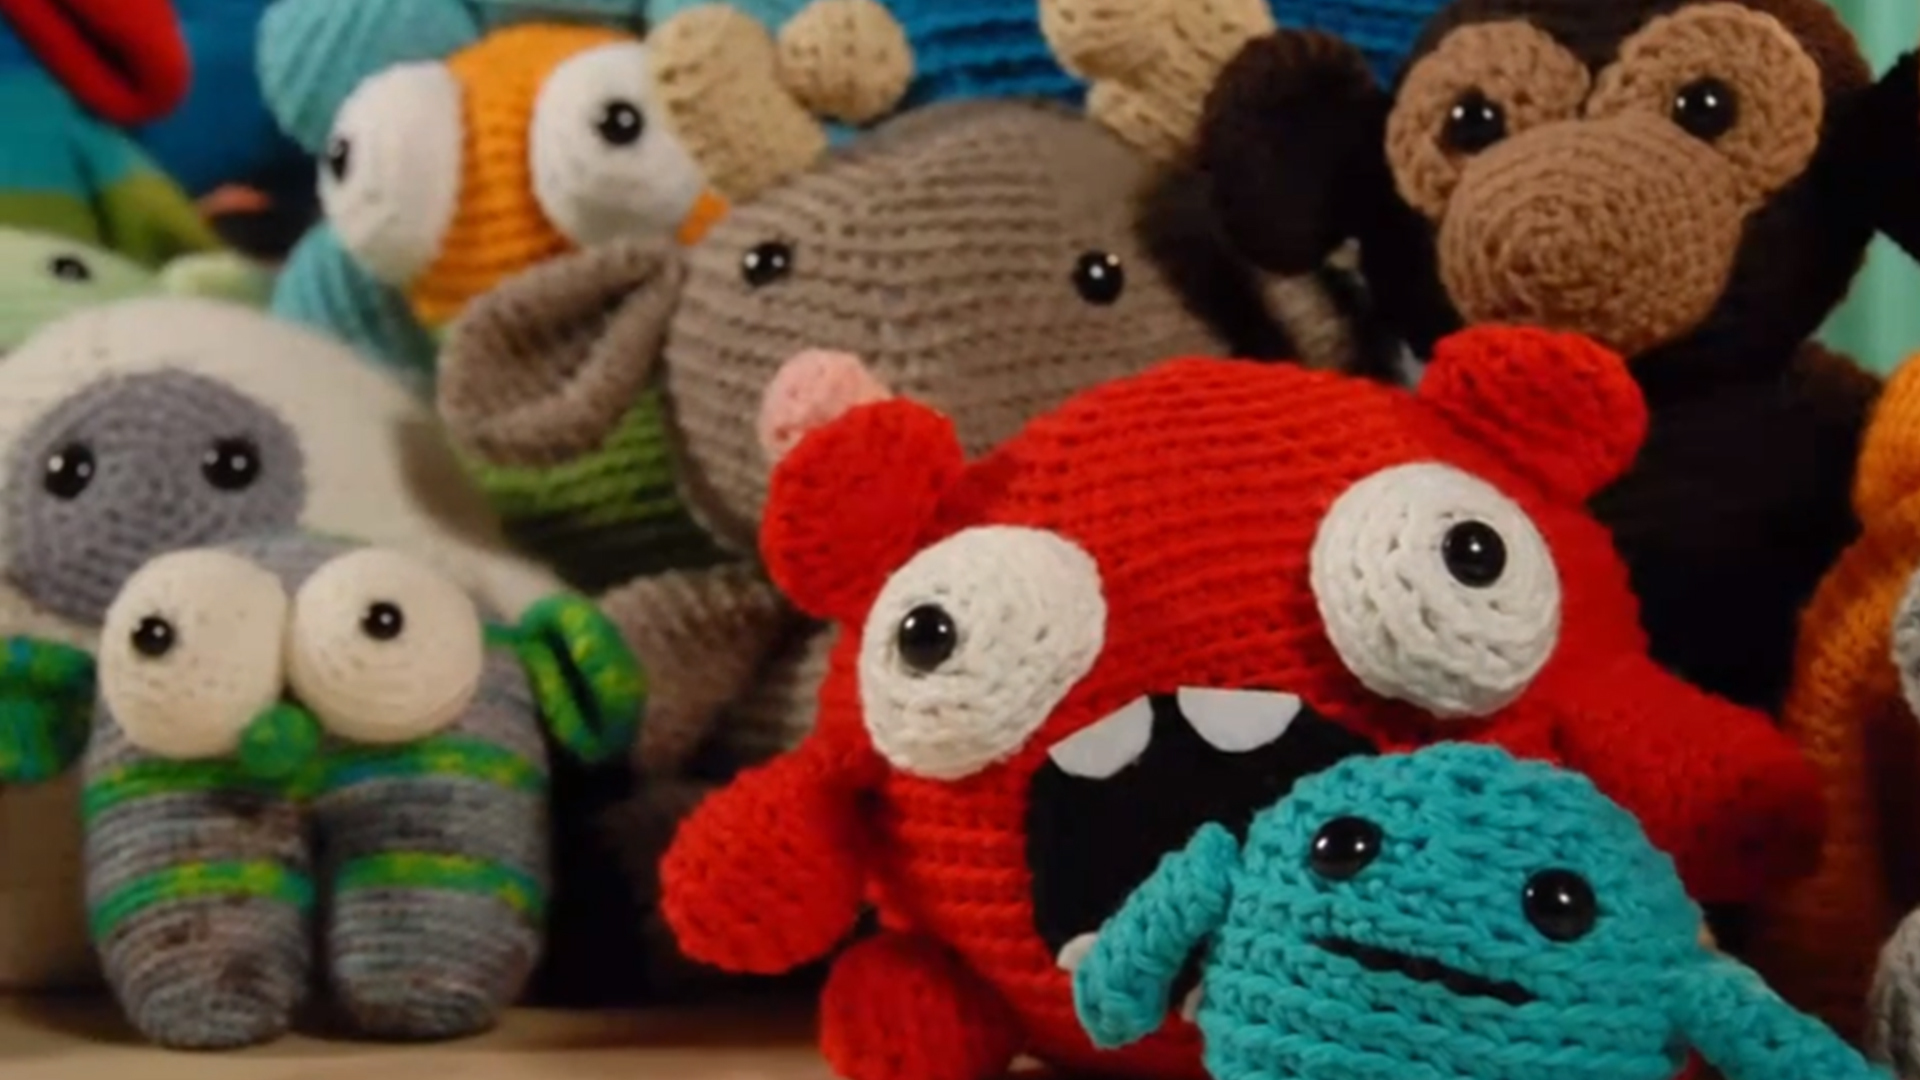 Crochet Pattern: Custom Fit Crochet Gloves - Edie Eckman